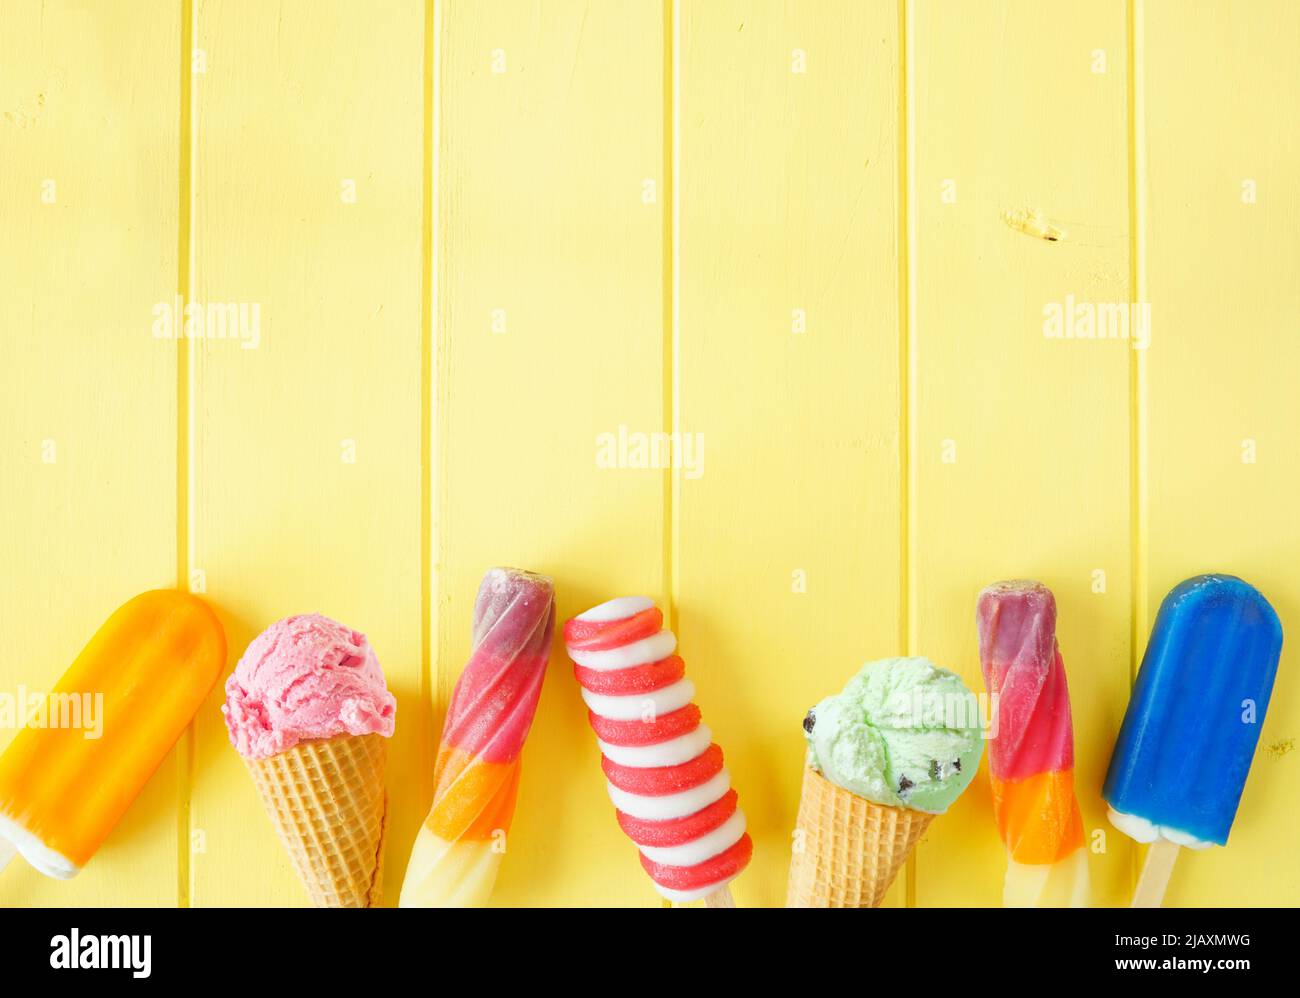 Auswahl an farbenfrohen, gefrorenen Desserts im Sommer. Draufsicht unterer Rand auf einem hellgelben Holzhintergrund. Speicherplatz kopieren. Stockfoto